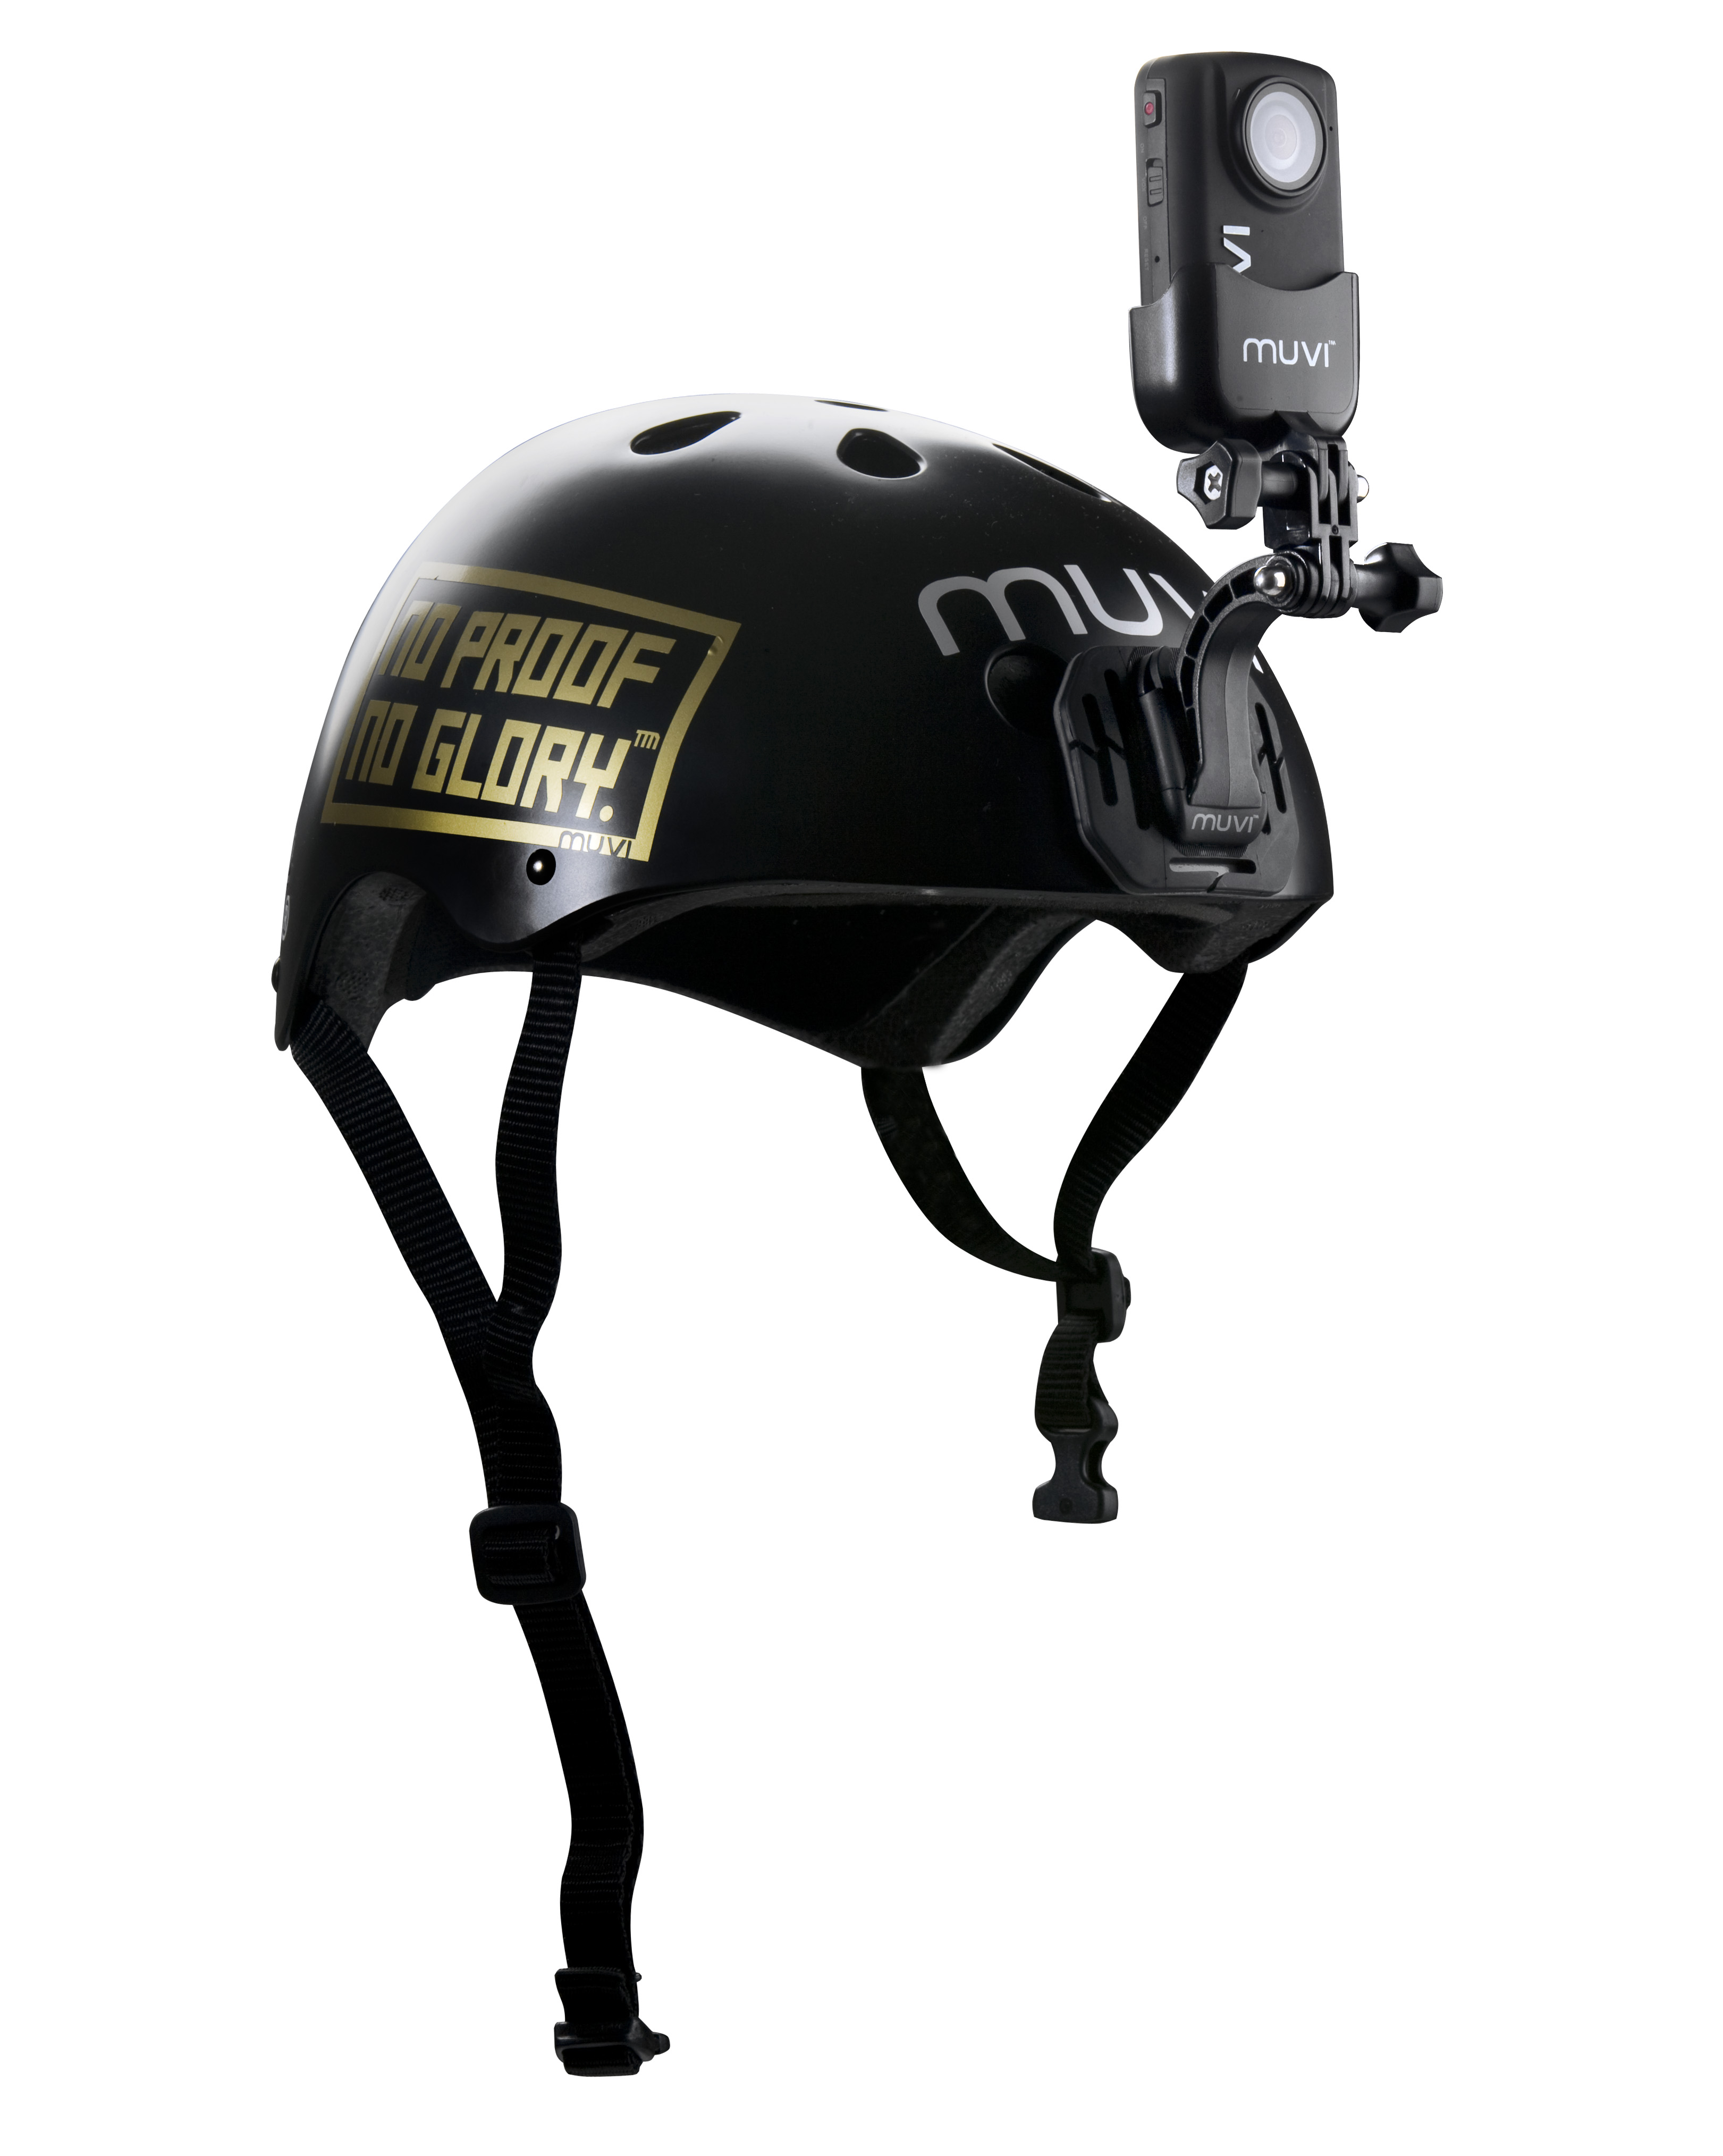 VCC-A018-HFM - MUVI? Helmet Front/Face Mount